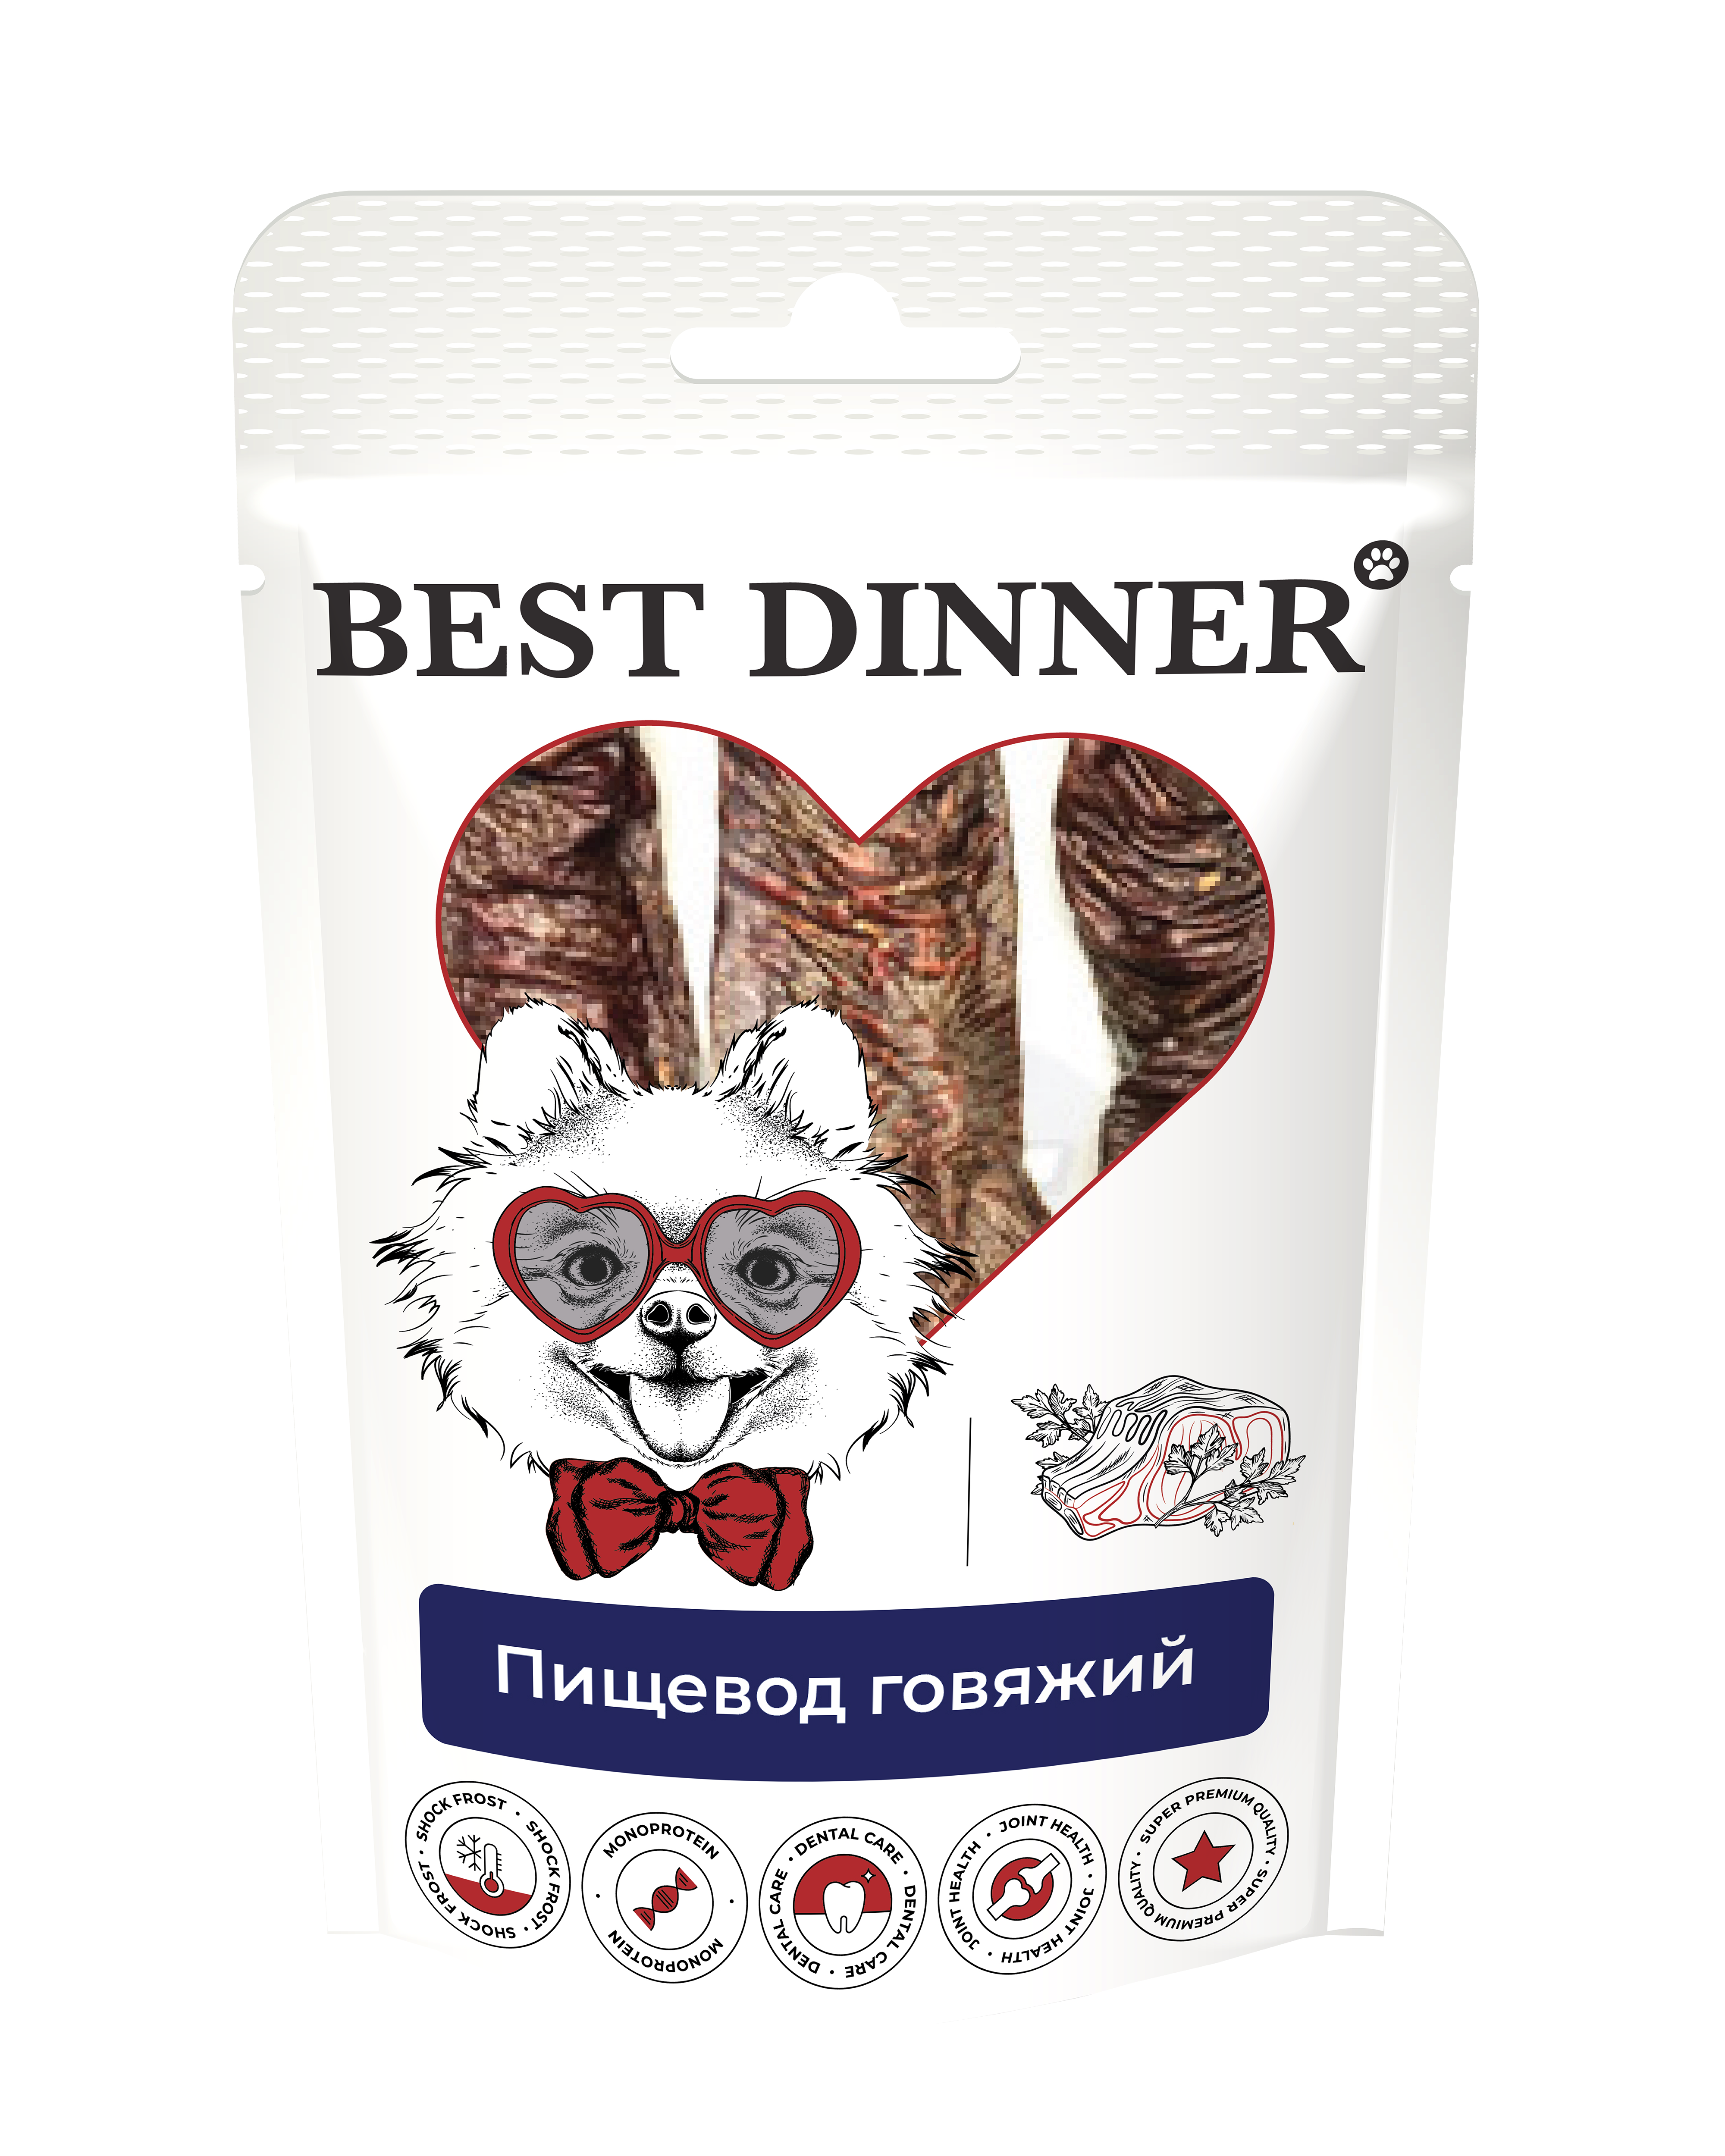 Лакомство Best Dinner Freeze Dry для собак пищевод говяжий